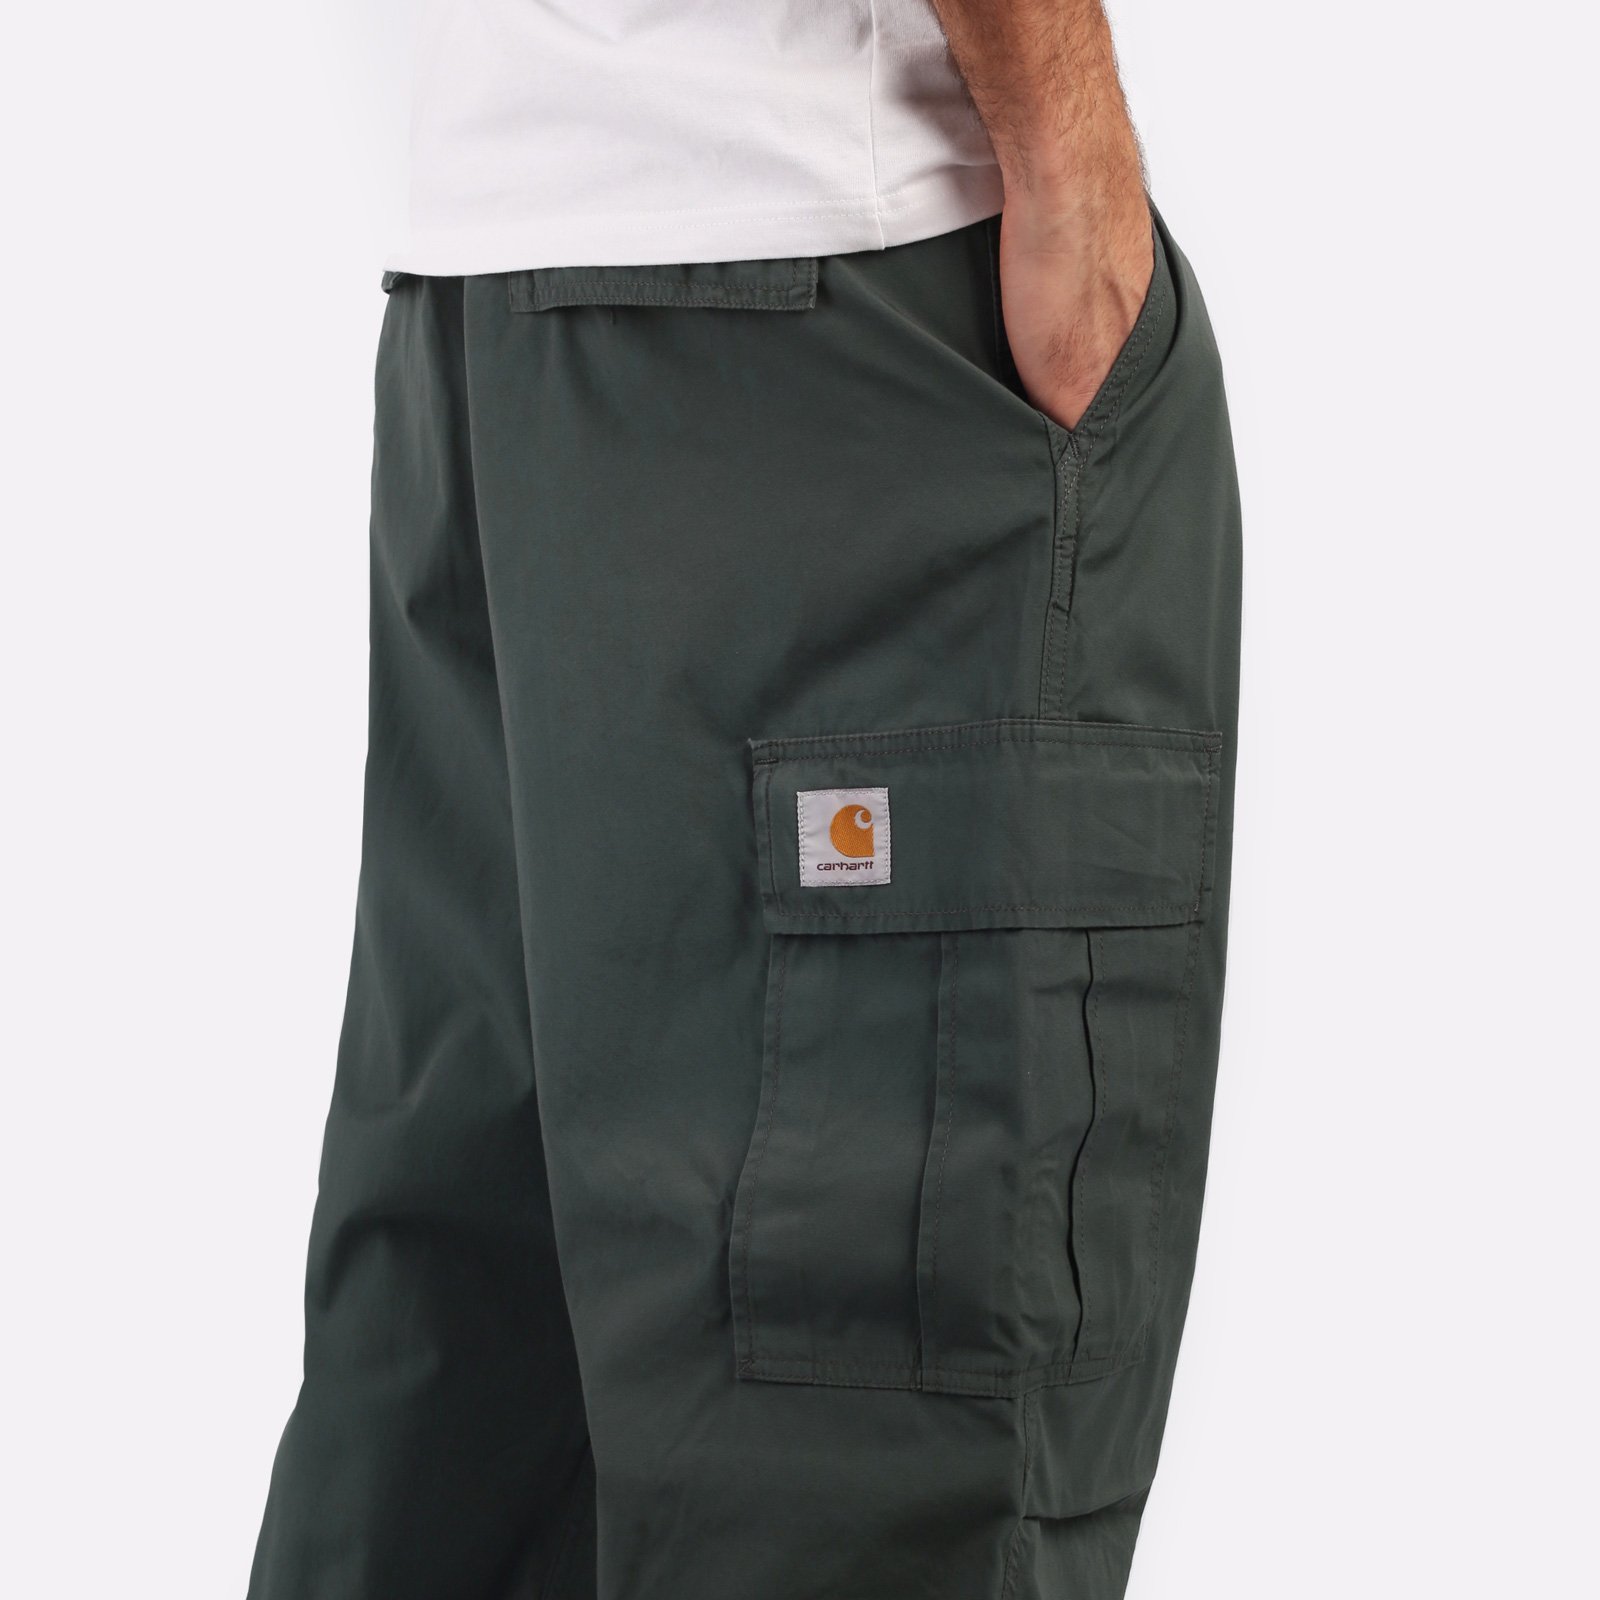 мужские брюки Carhartt WIP Cole Cargo Pant  (I030477-jura)  - цена, описание, фото 4